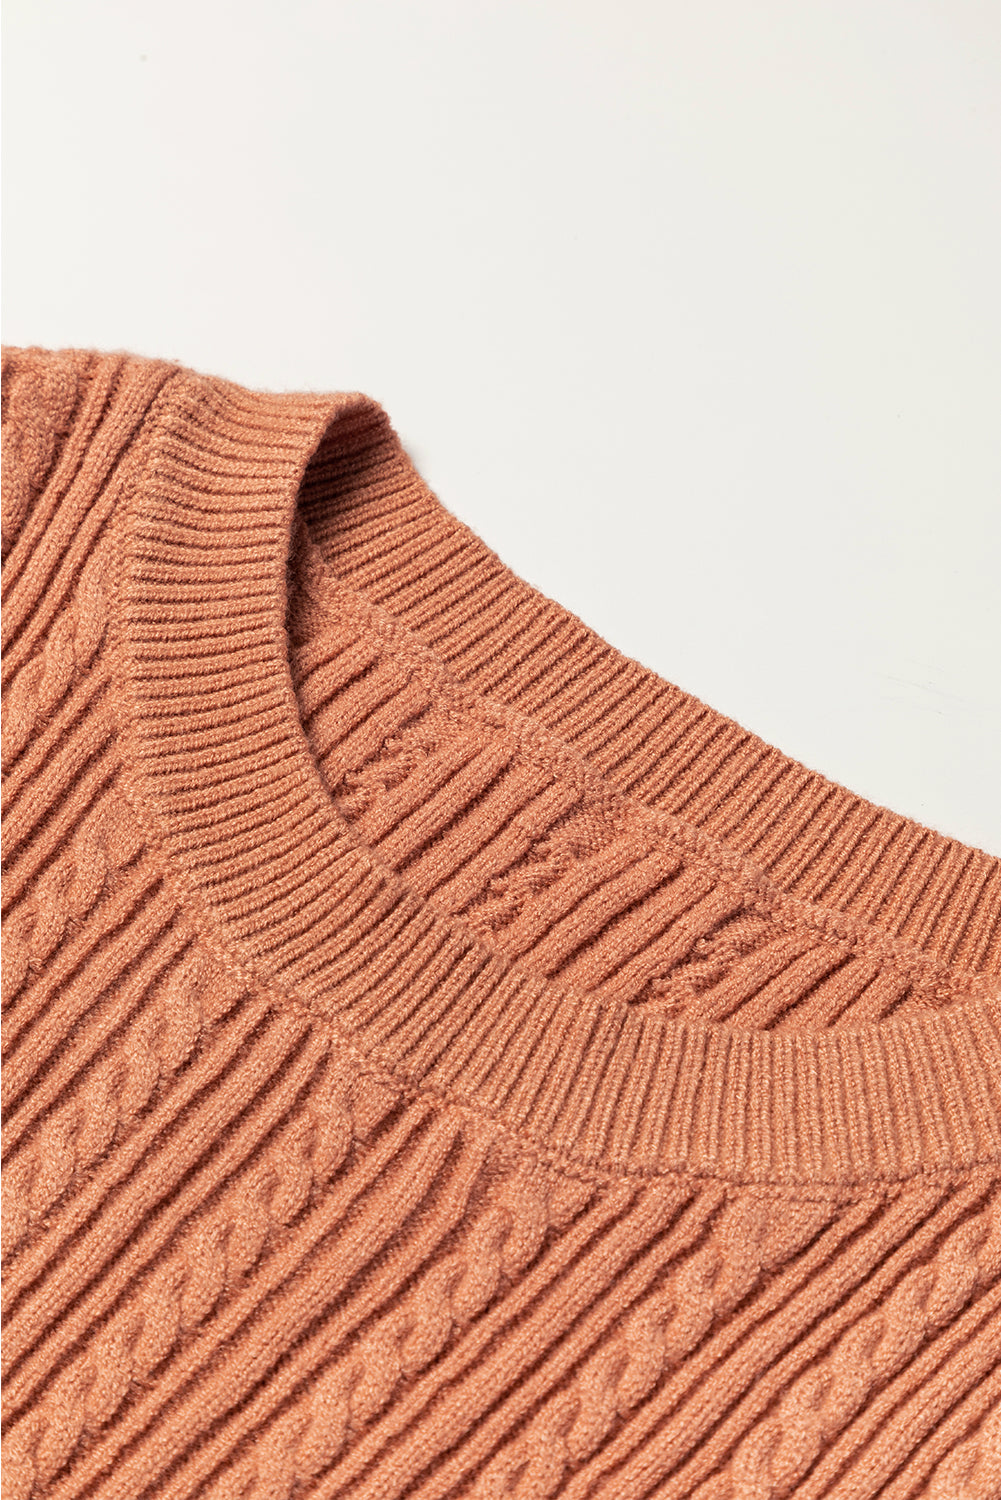 Maglione lavorato a maglia a trecce con polsini arricciati patchwork floreale dorato